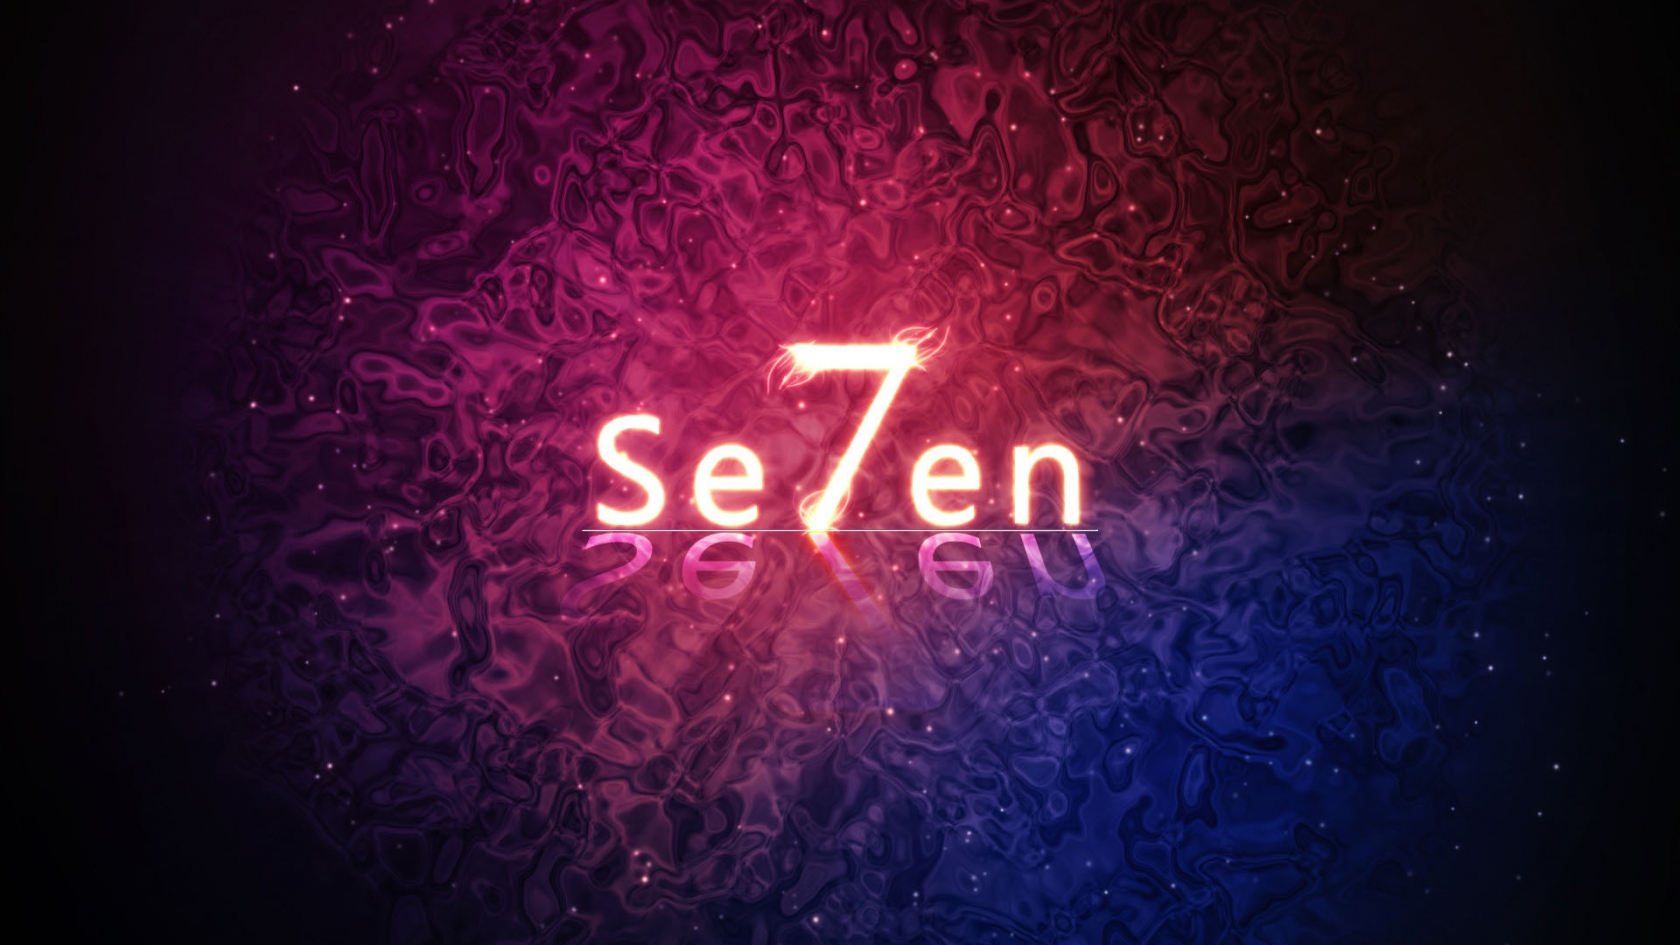 Se7en for 1680 x 945 HDTV resolution